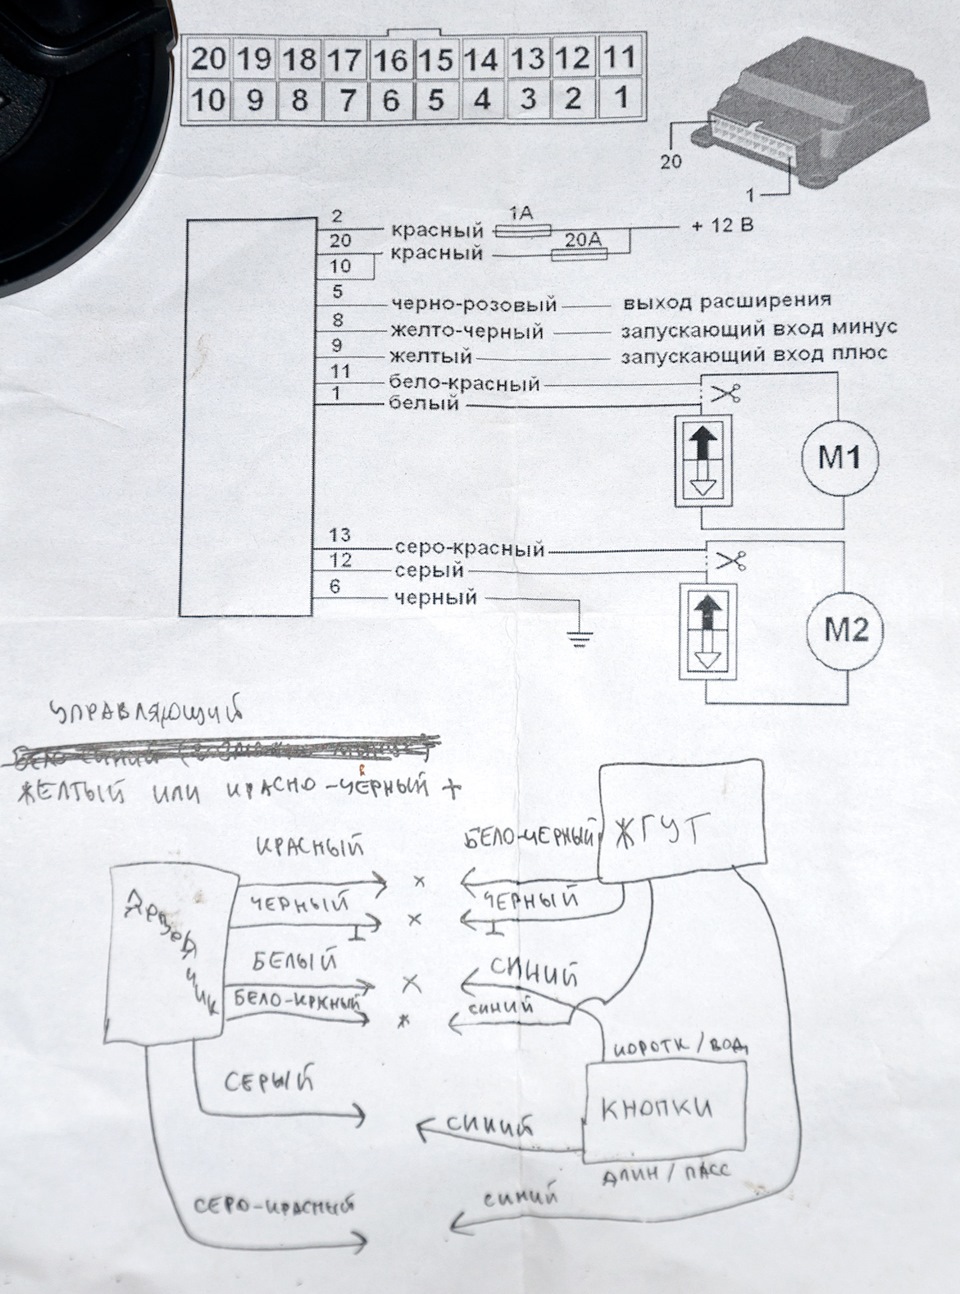 Установка и подключение доводчика стекол на Lada Granta, Kalina. NIva. 4x4 и пр.